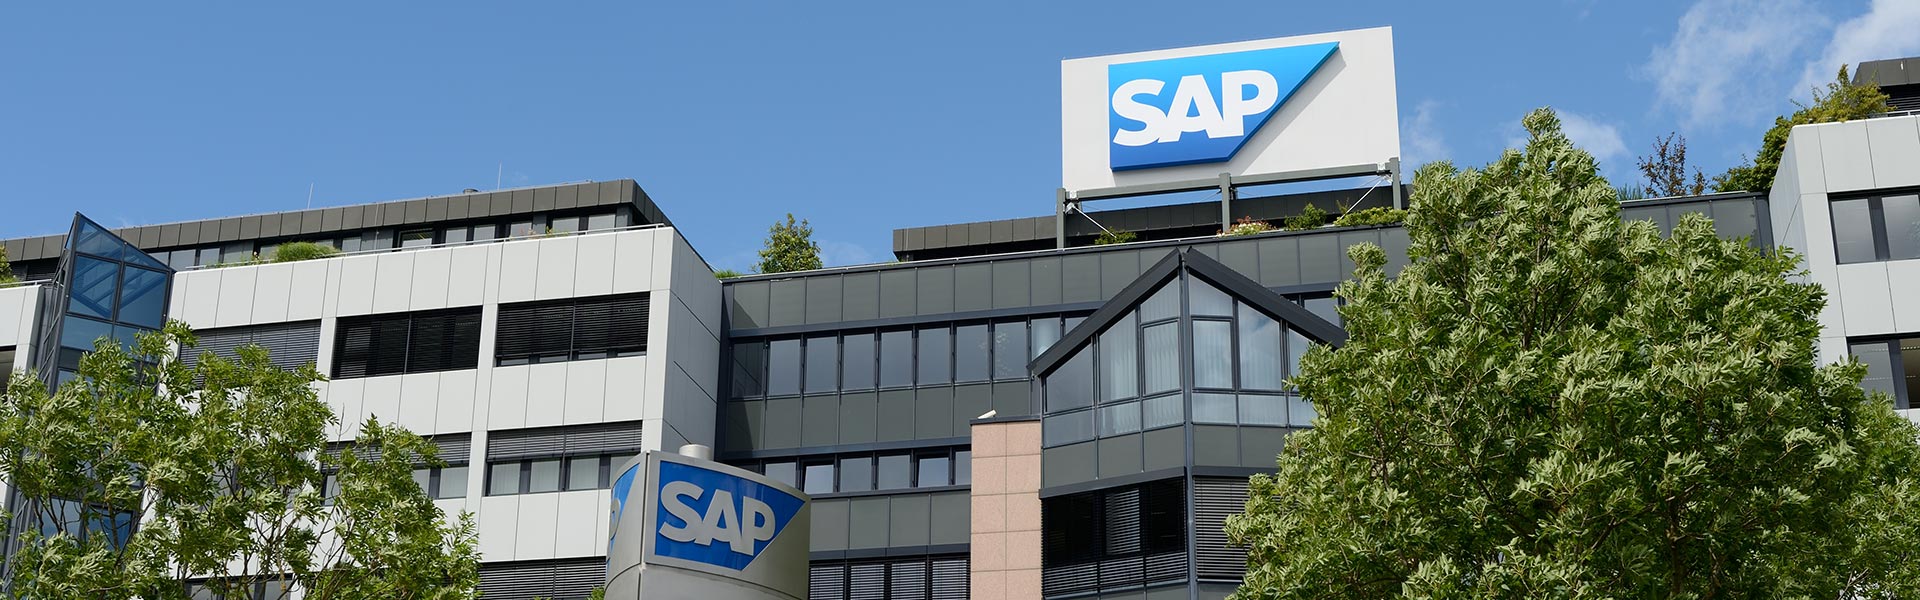 Office Depot, avanza en la carrera de la omnicanalidad de la mano de SAP